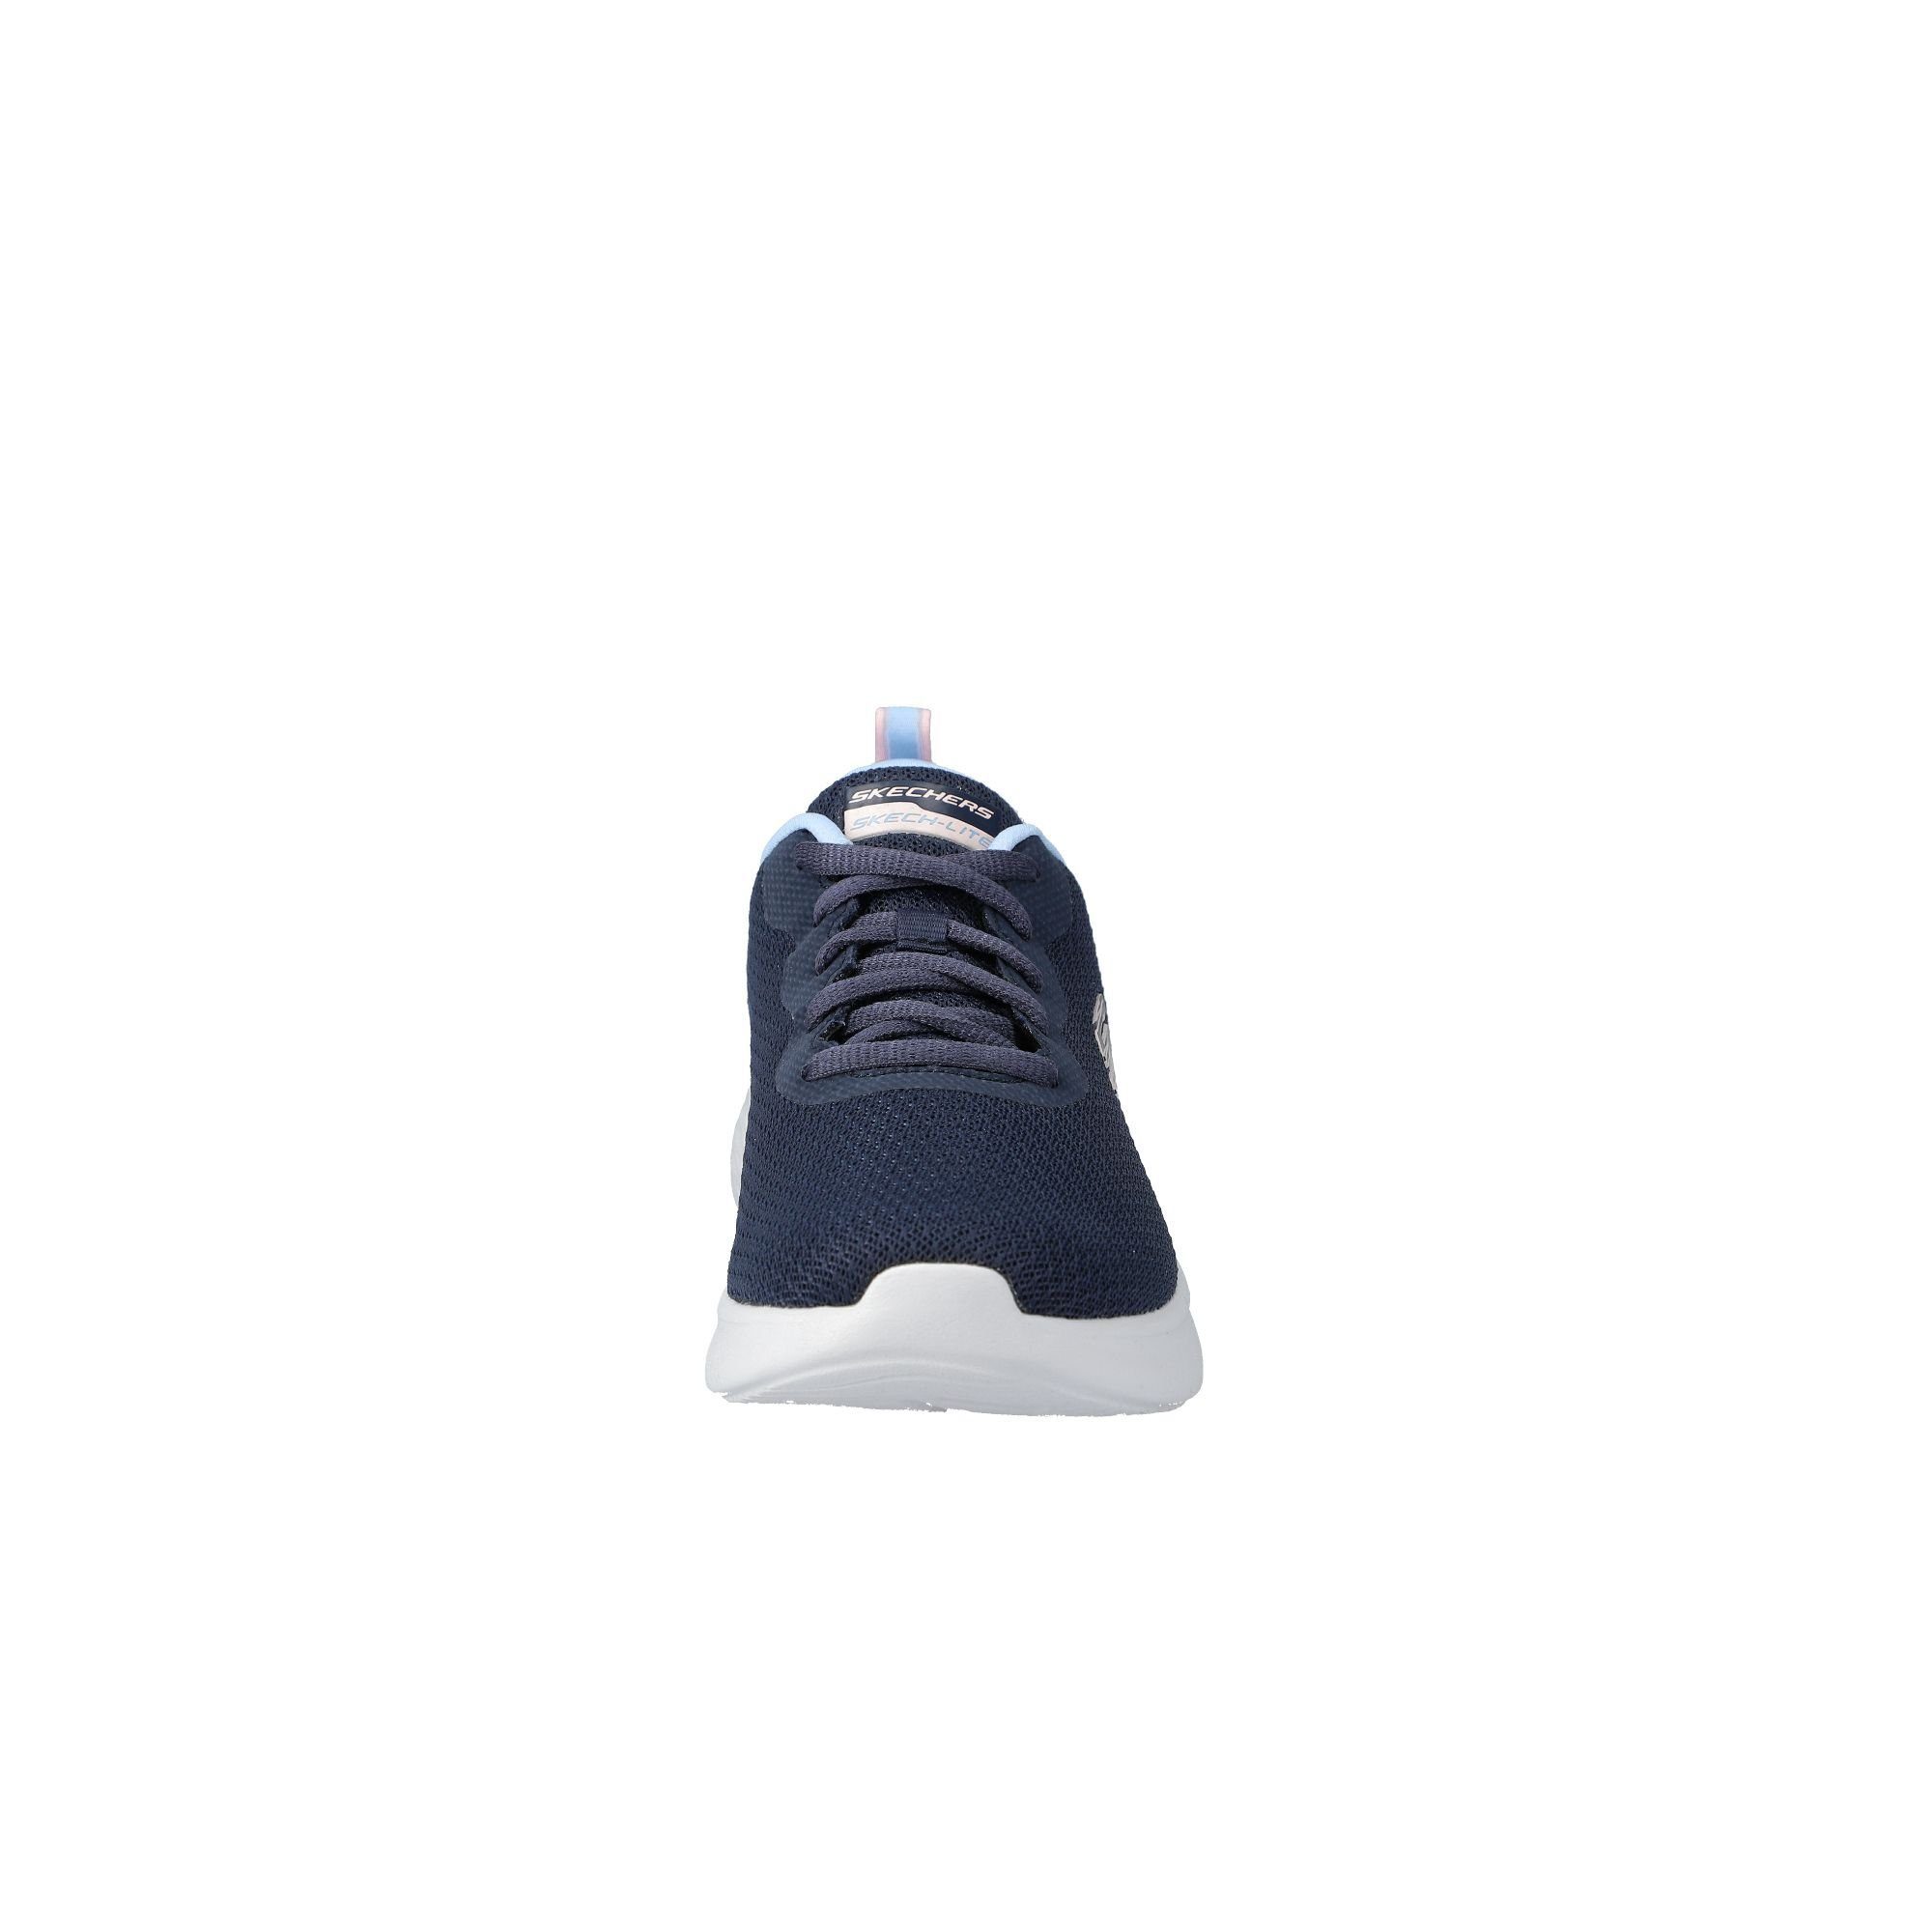 Sneaker Skechers navy/blue